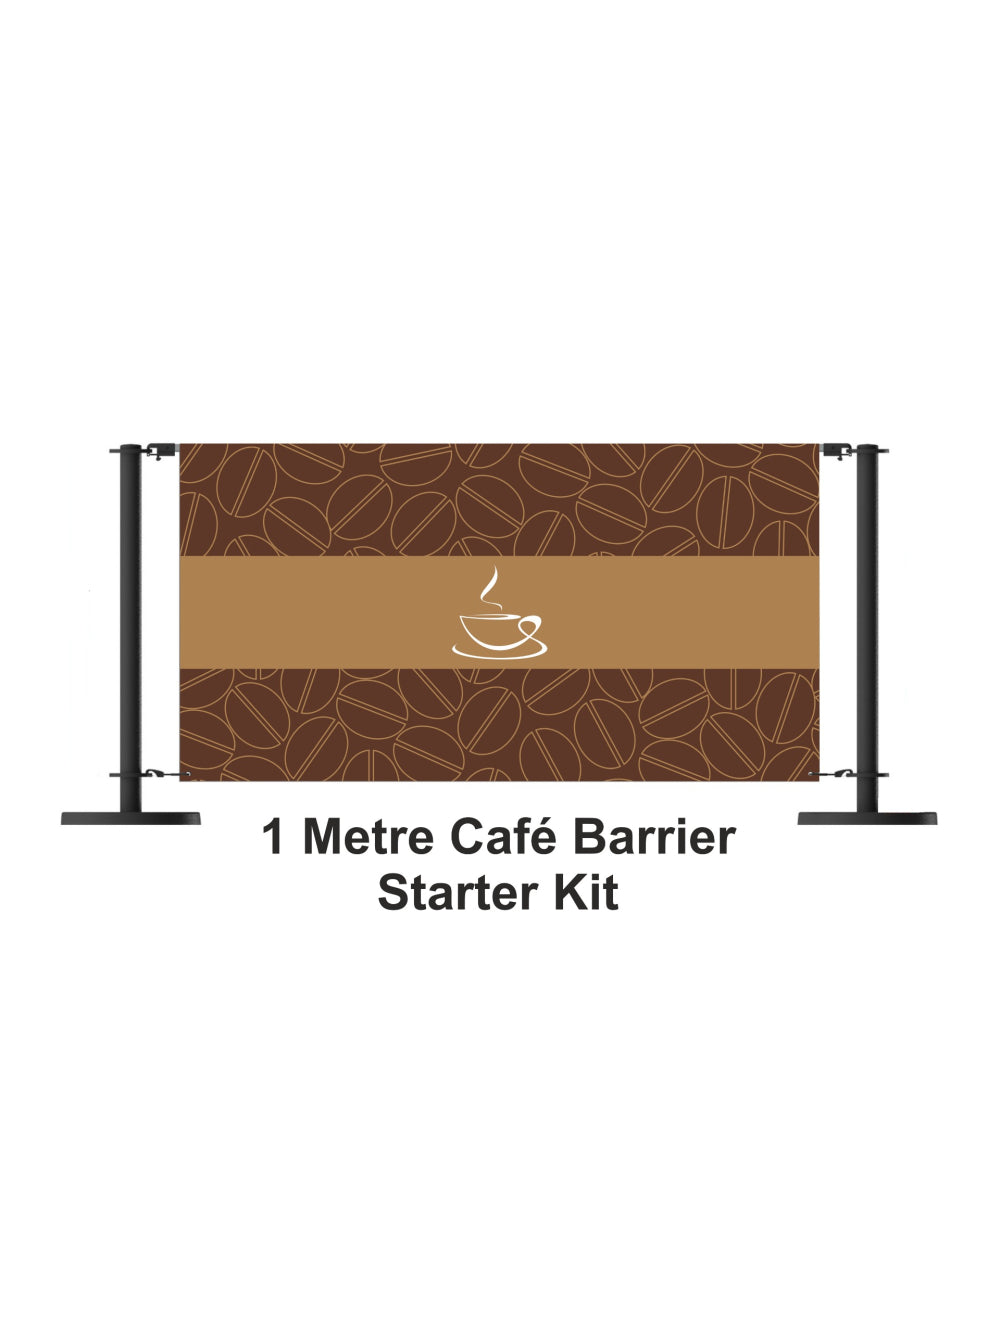 Kit de démarrage de la barrière de café de 1 mètre